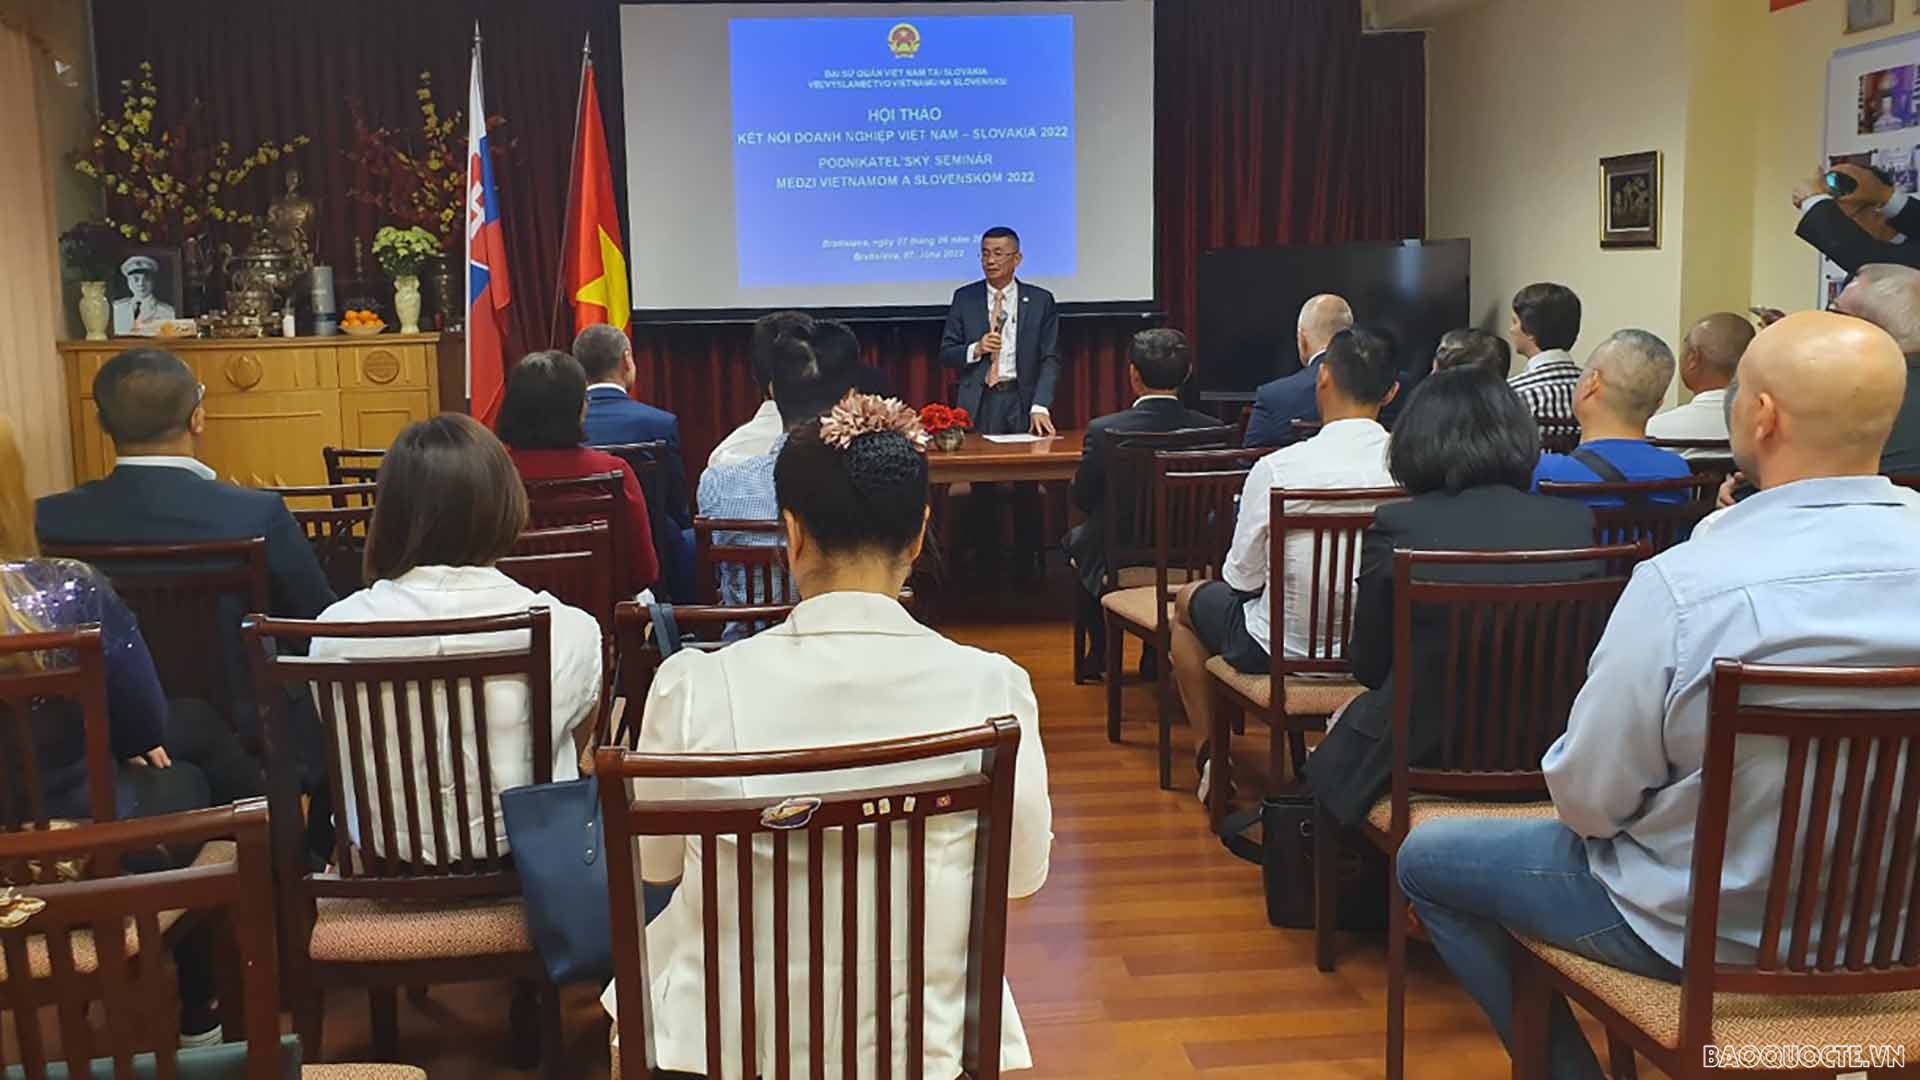 Đại sứ Nguyễn Tuấn phát biểu khai mạc hội thảo.